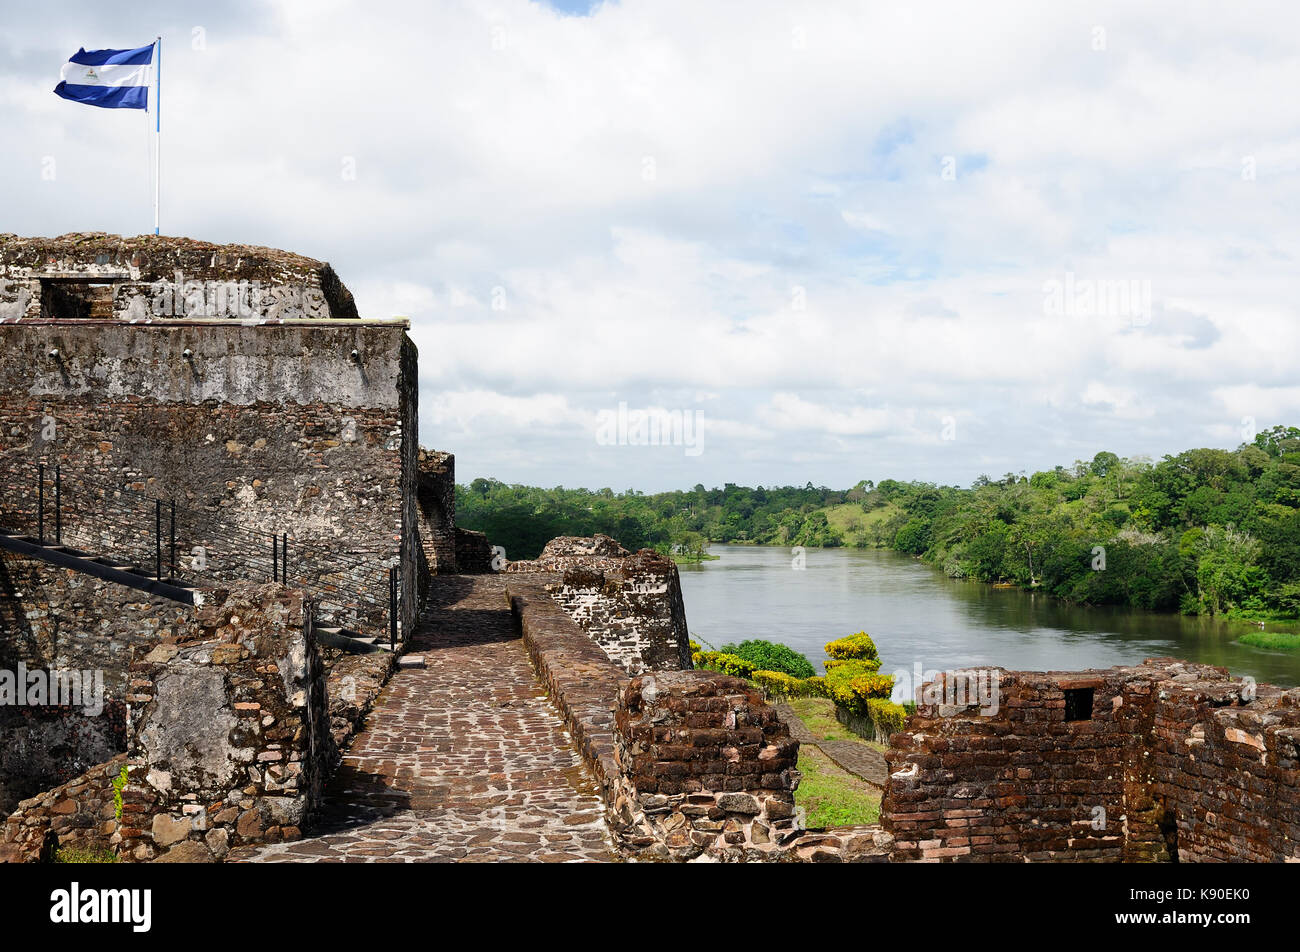 America centrale Nicaragua, spagnolo fortificazione di difesa in di El Castillo su una banca del fiume san juan per difendere l'accesso alla città di Grenada Foto Stock